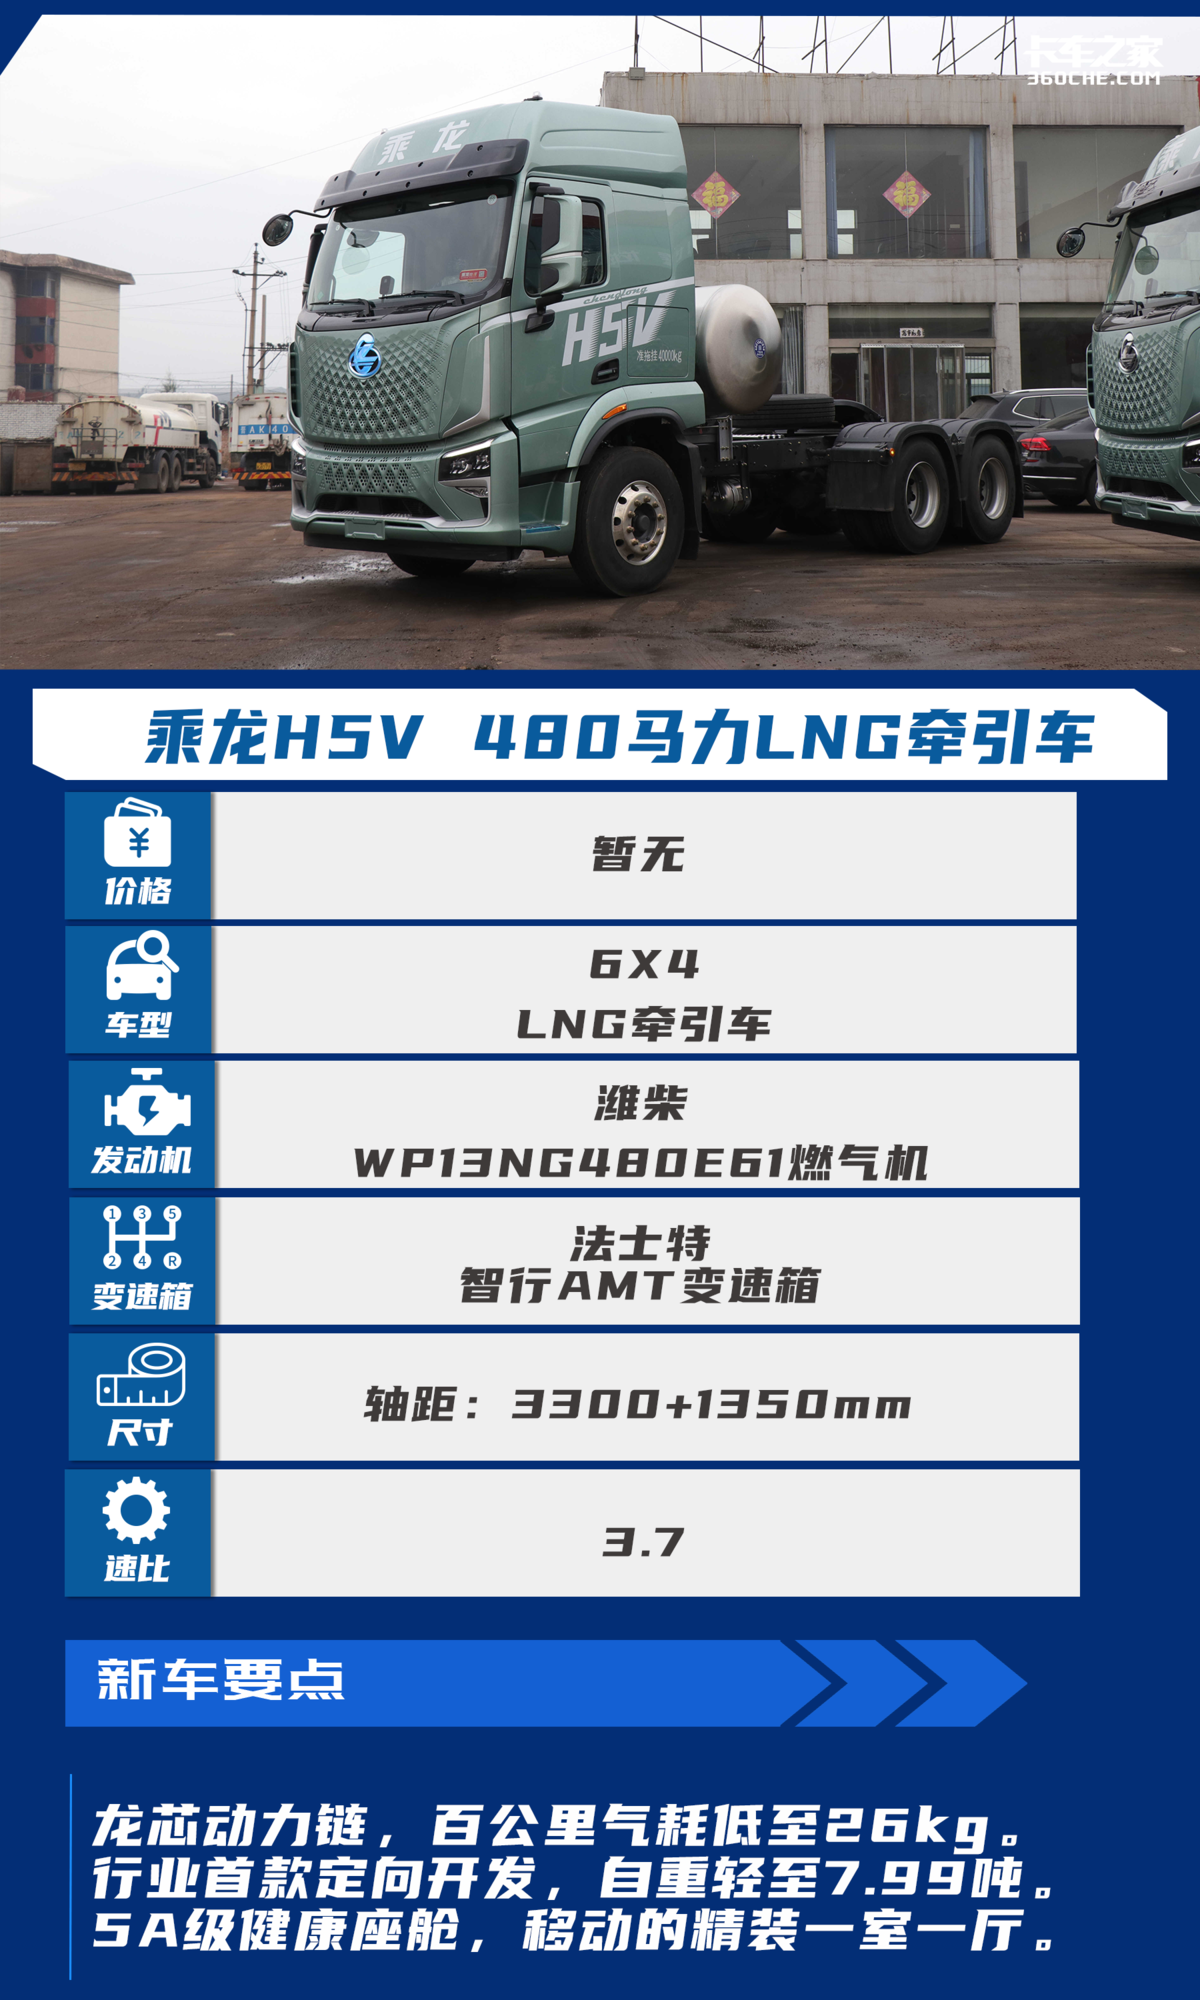 降本增效再添利器！乘龙H5V燃气车自重仅7.99吨 气耗低至26kg/100km！